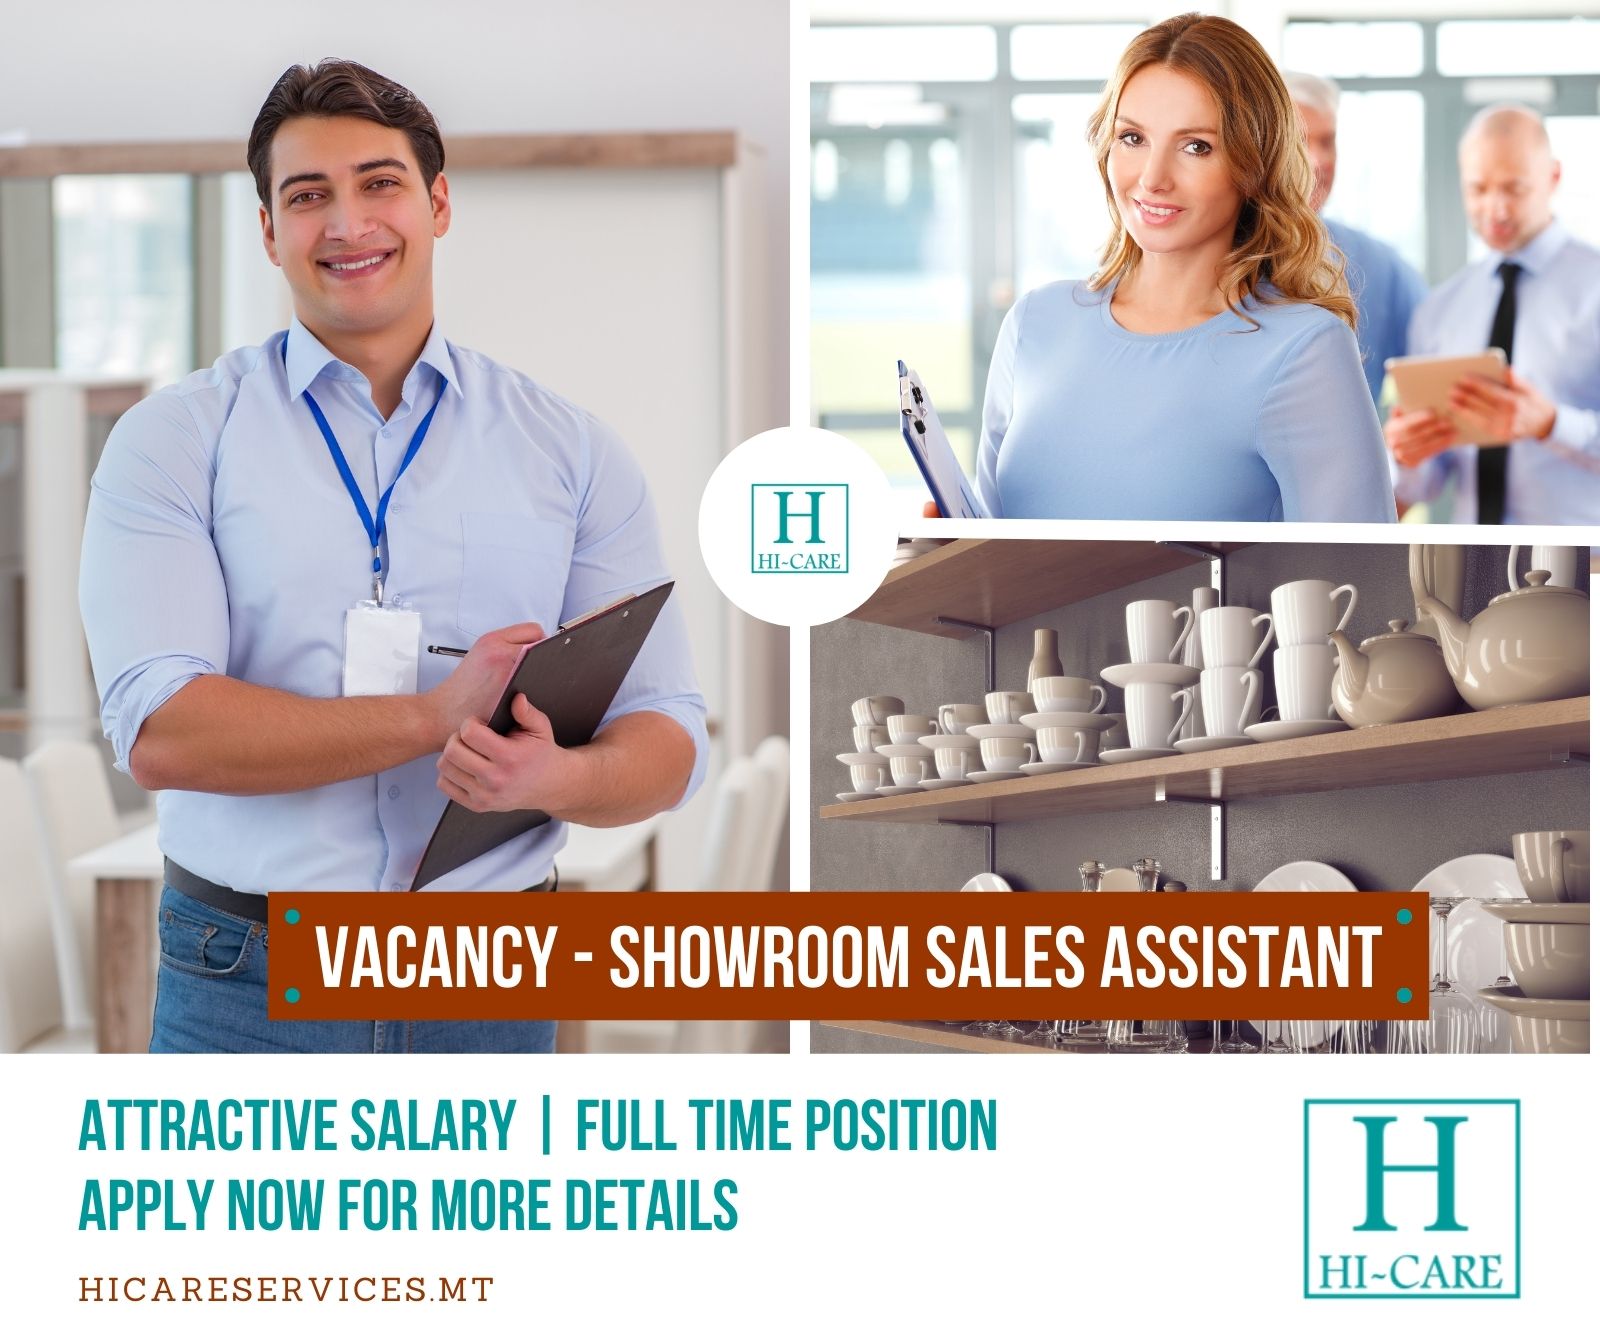 Showroom Sales Assistant needed in Malta